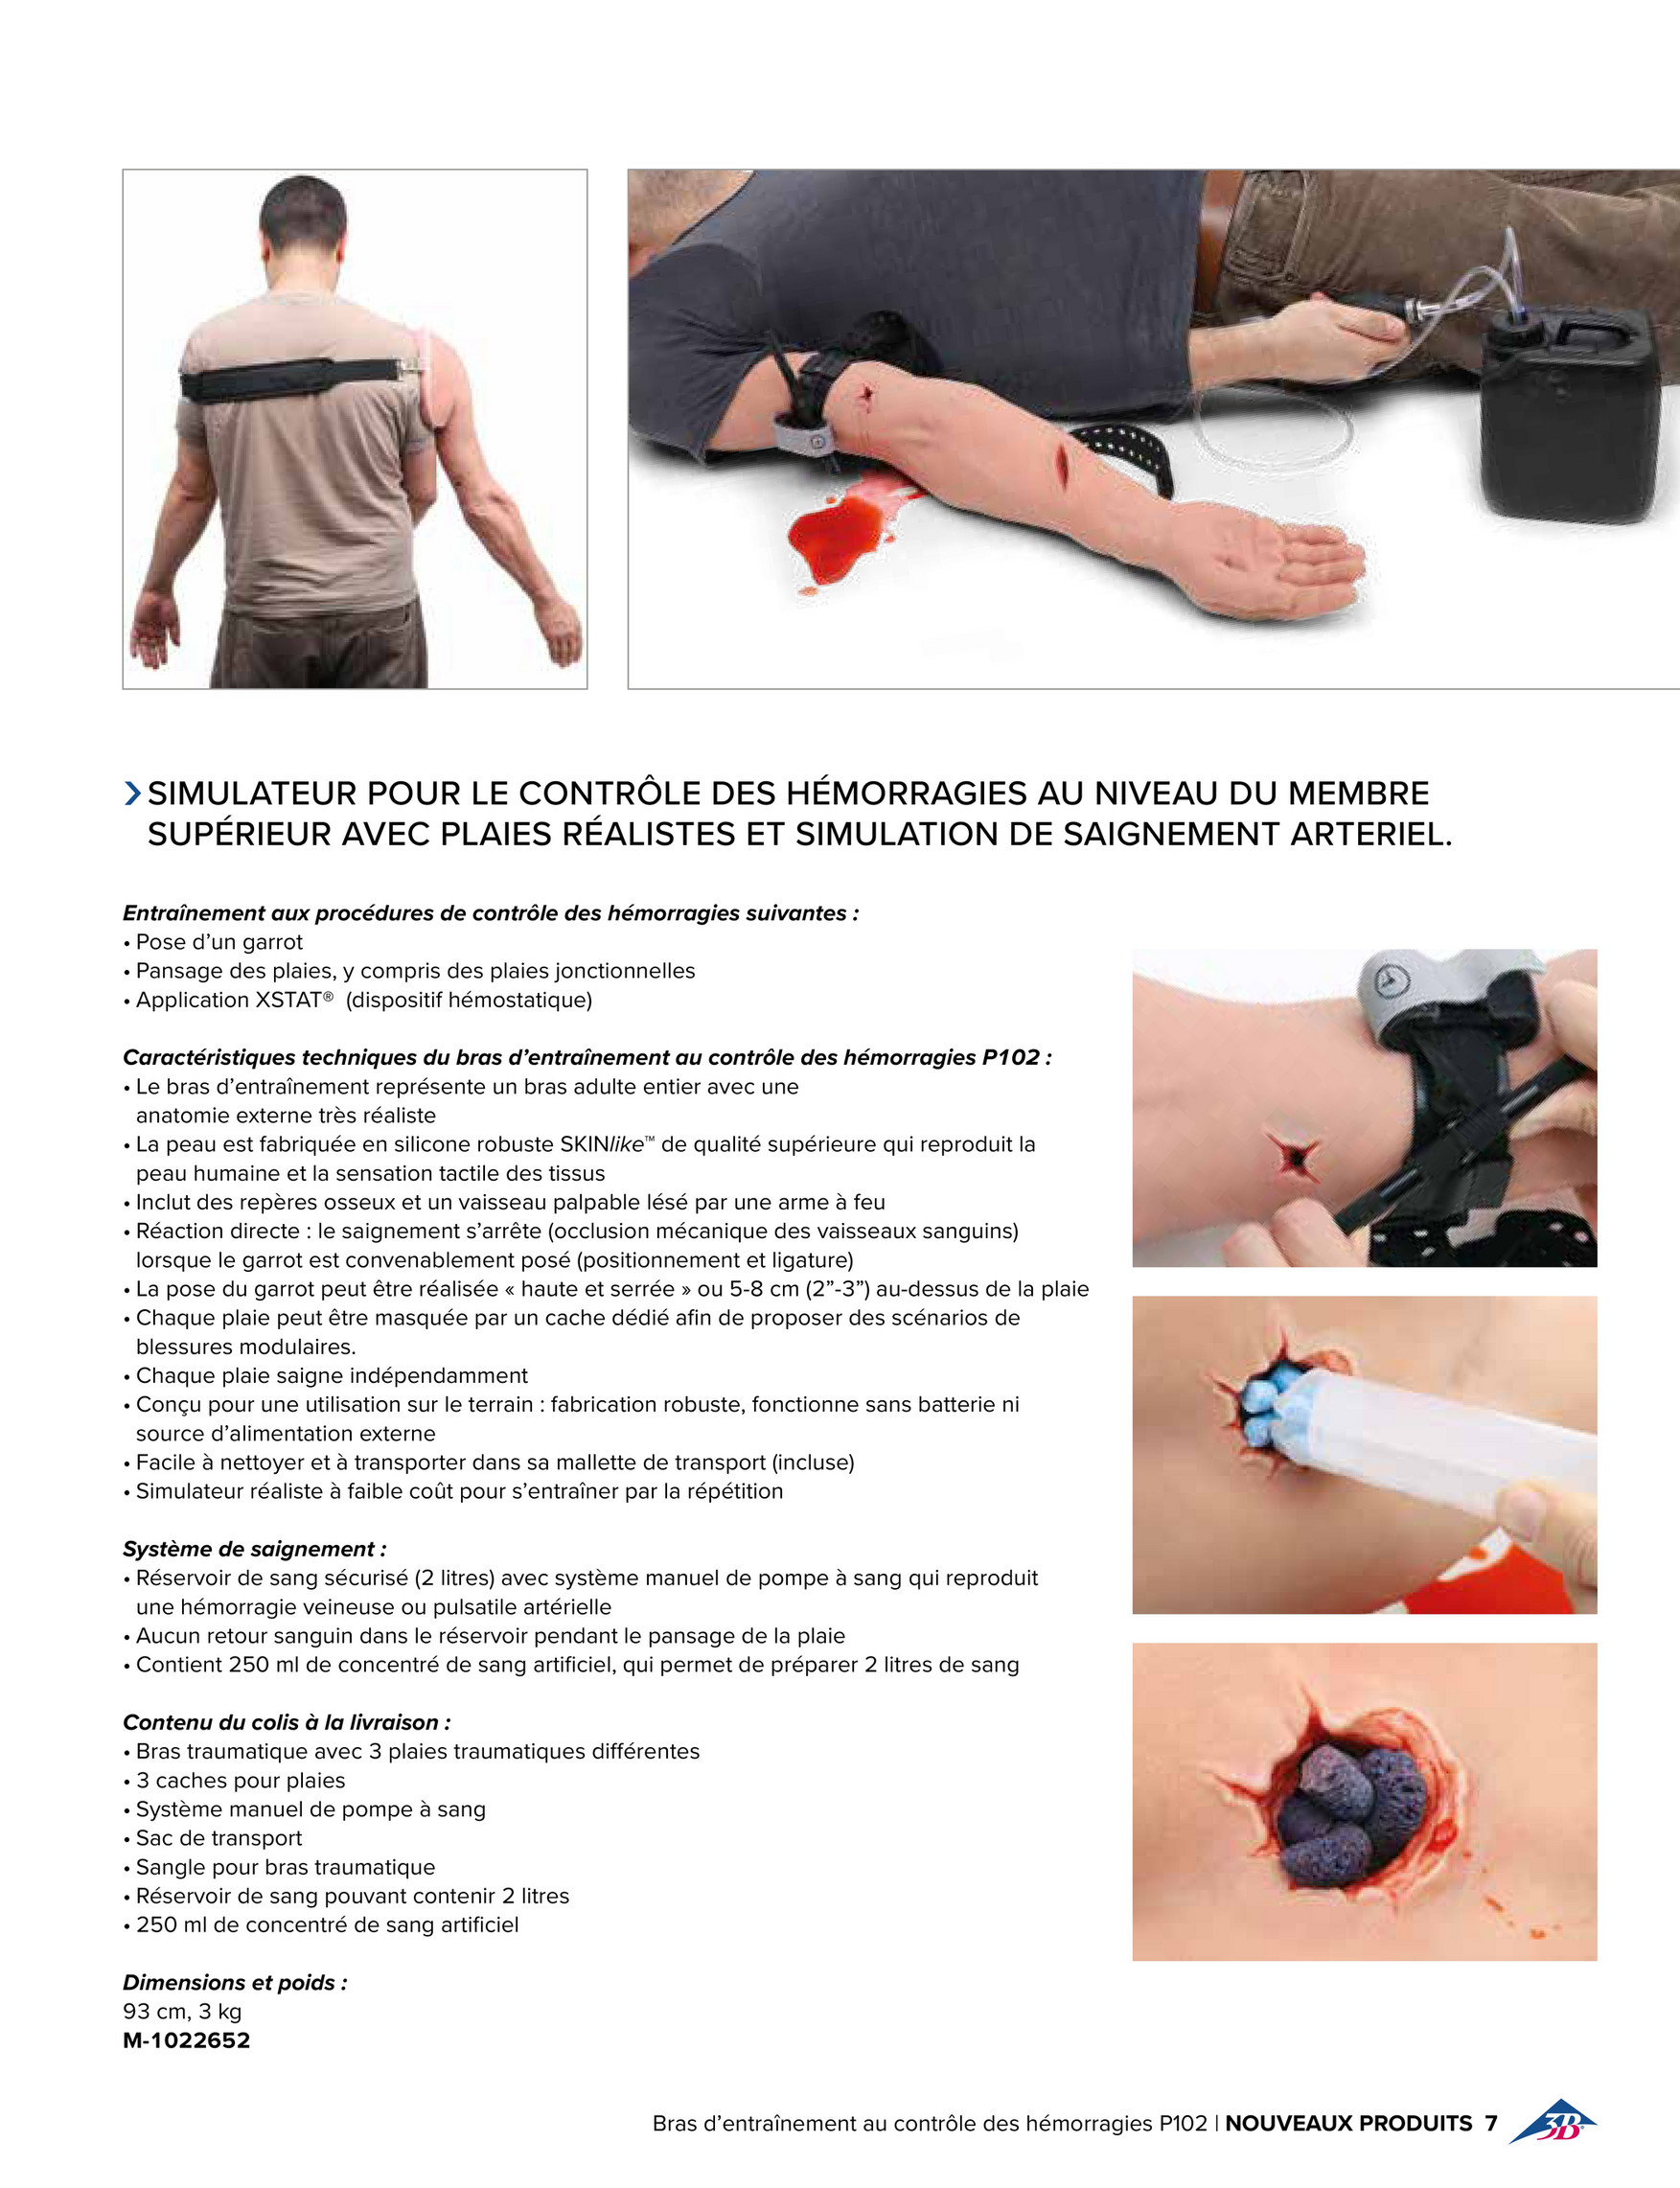 Brassard de tension artérielle pour mannequin de soins - 1019717 -  Life/form - LF01073U - Options - 3B Scientific